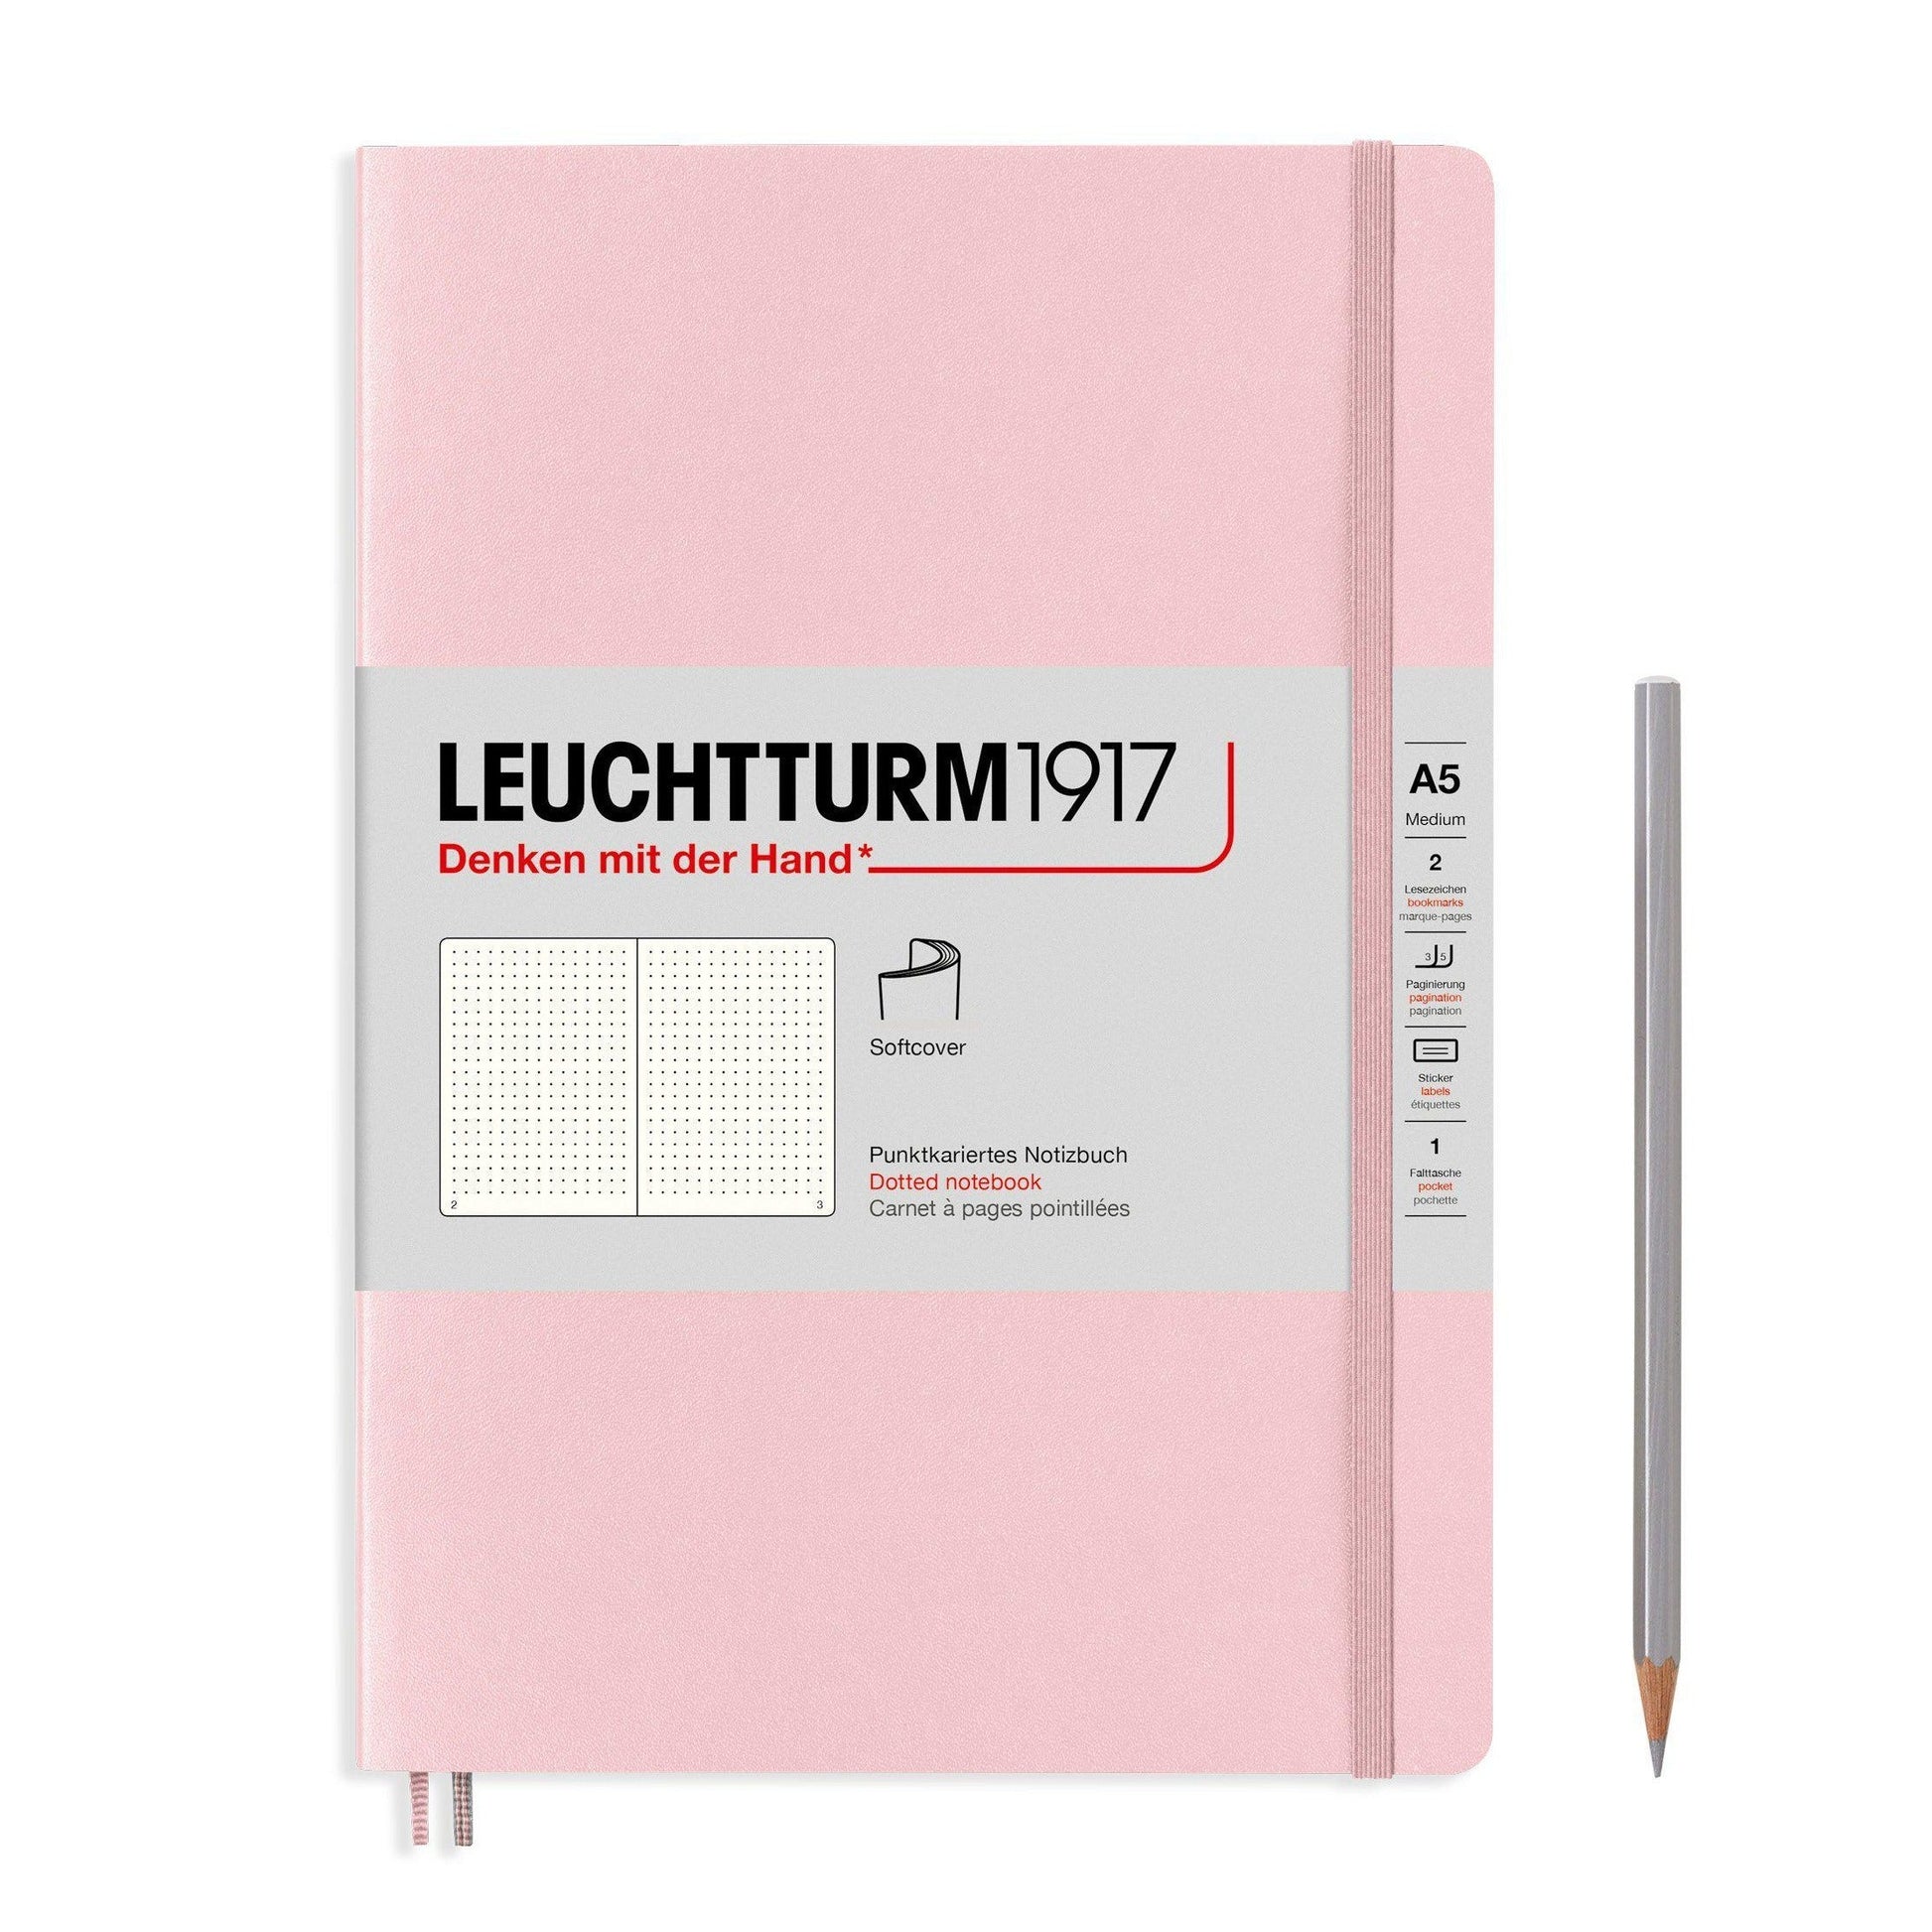 Leuchtturm1917 A5 Notebook Comparison - The Goulet Pen Company